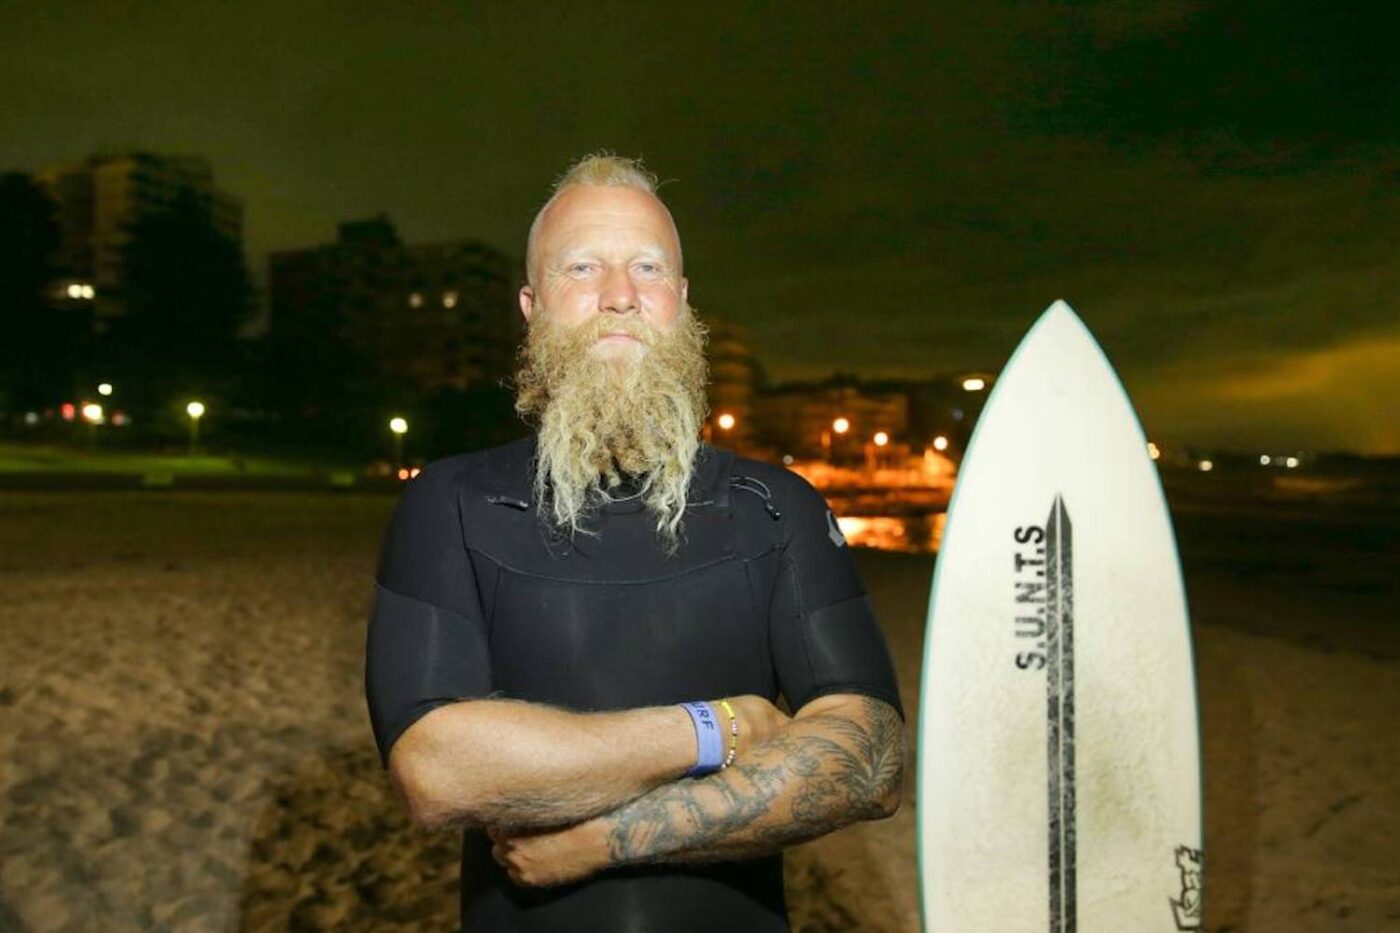 Blake Johnston Breaks Record For World’s Longest Surf Session, For Mental Health Awareness